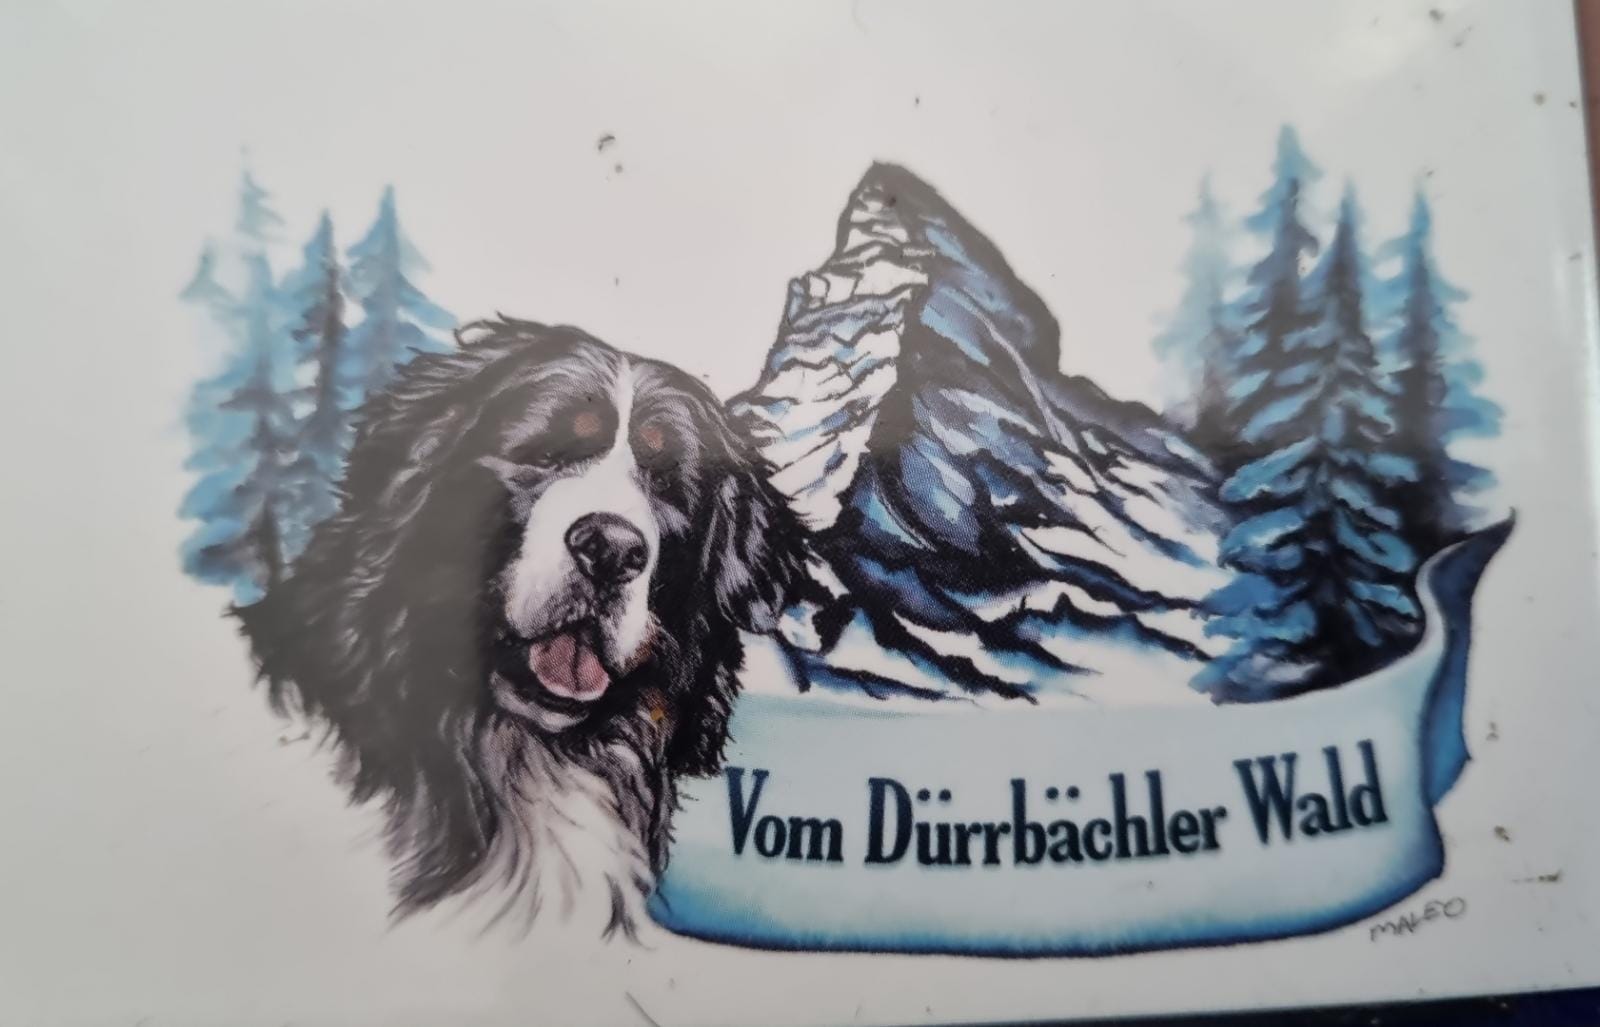 Vomdurrbachlerwald